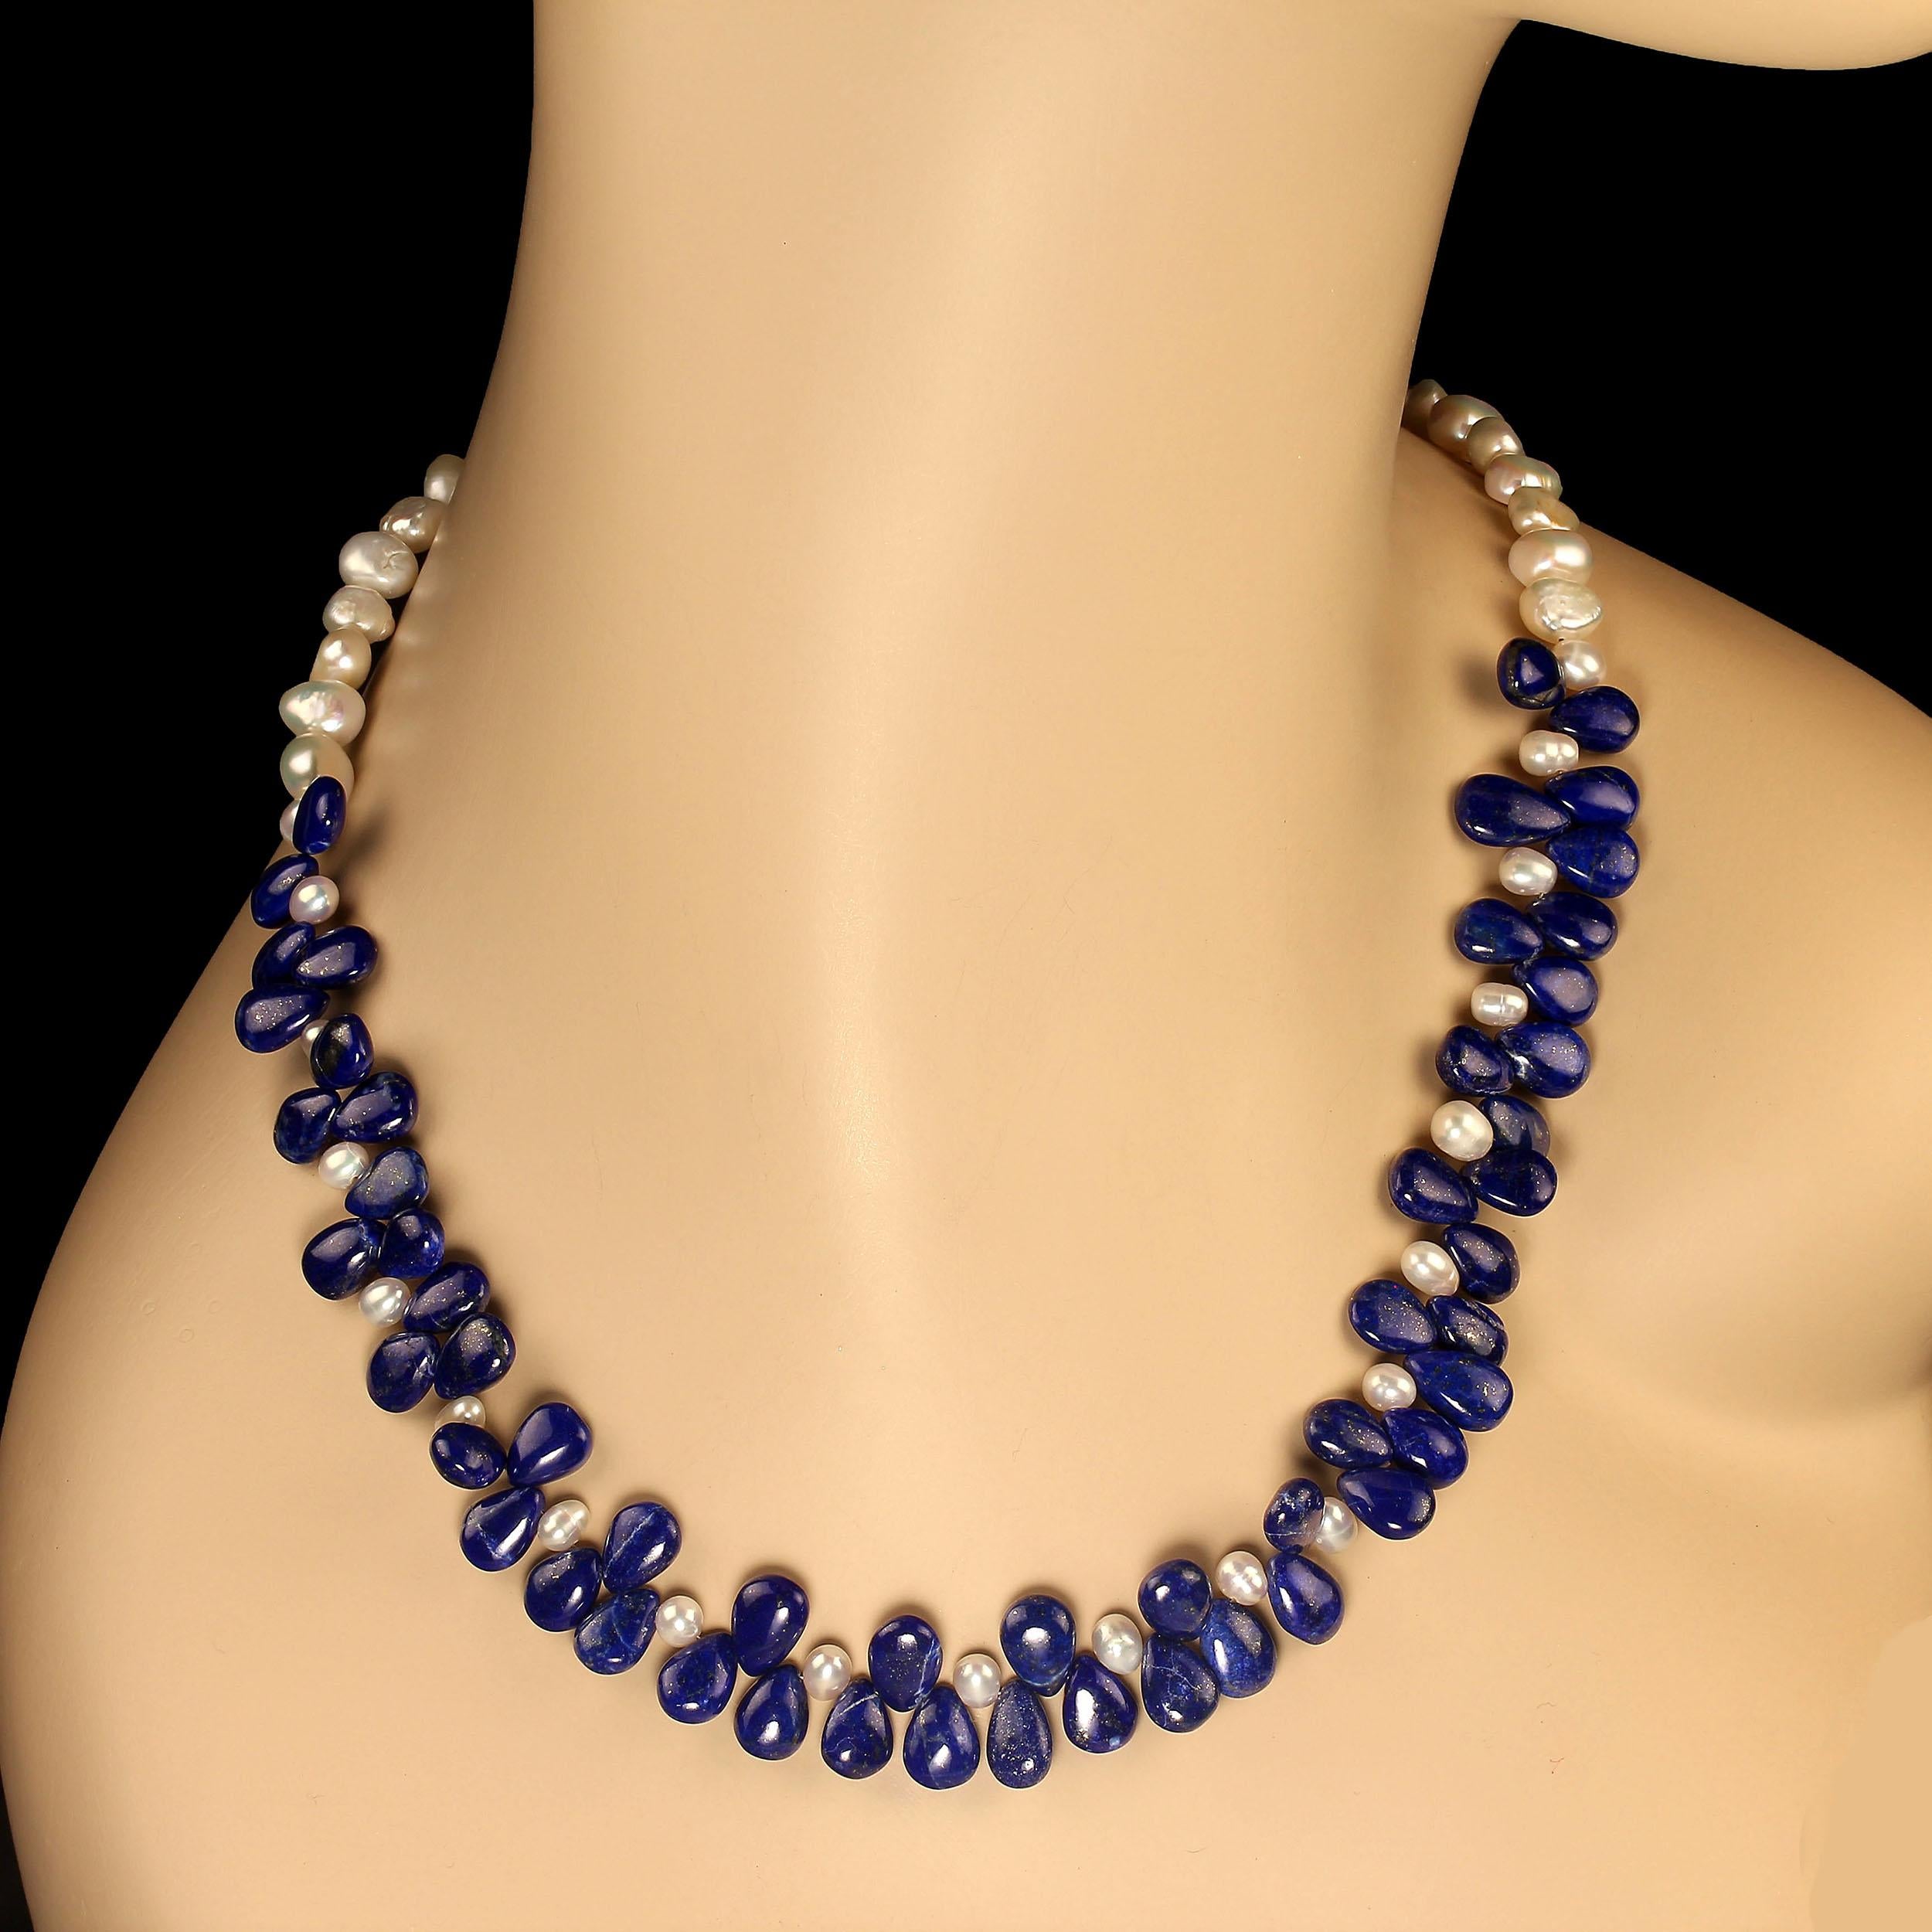 Collier unique de 20 pouces composé de pierres précieuses lapis-lazuli lisses 9x7 hautement polies, rehaussées de perles blanc crème de 5 mm et de perles 9x7 doublement brillantes. Ce collier de 20 pouces est sécurisé par un fermoir à bascule en